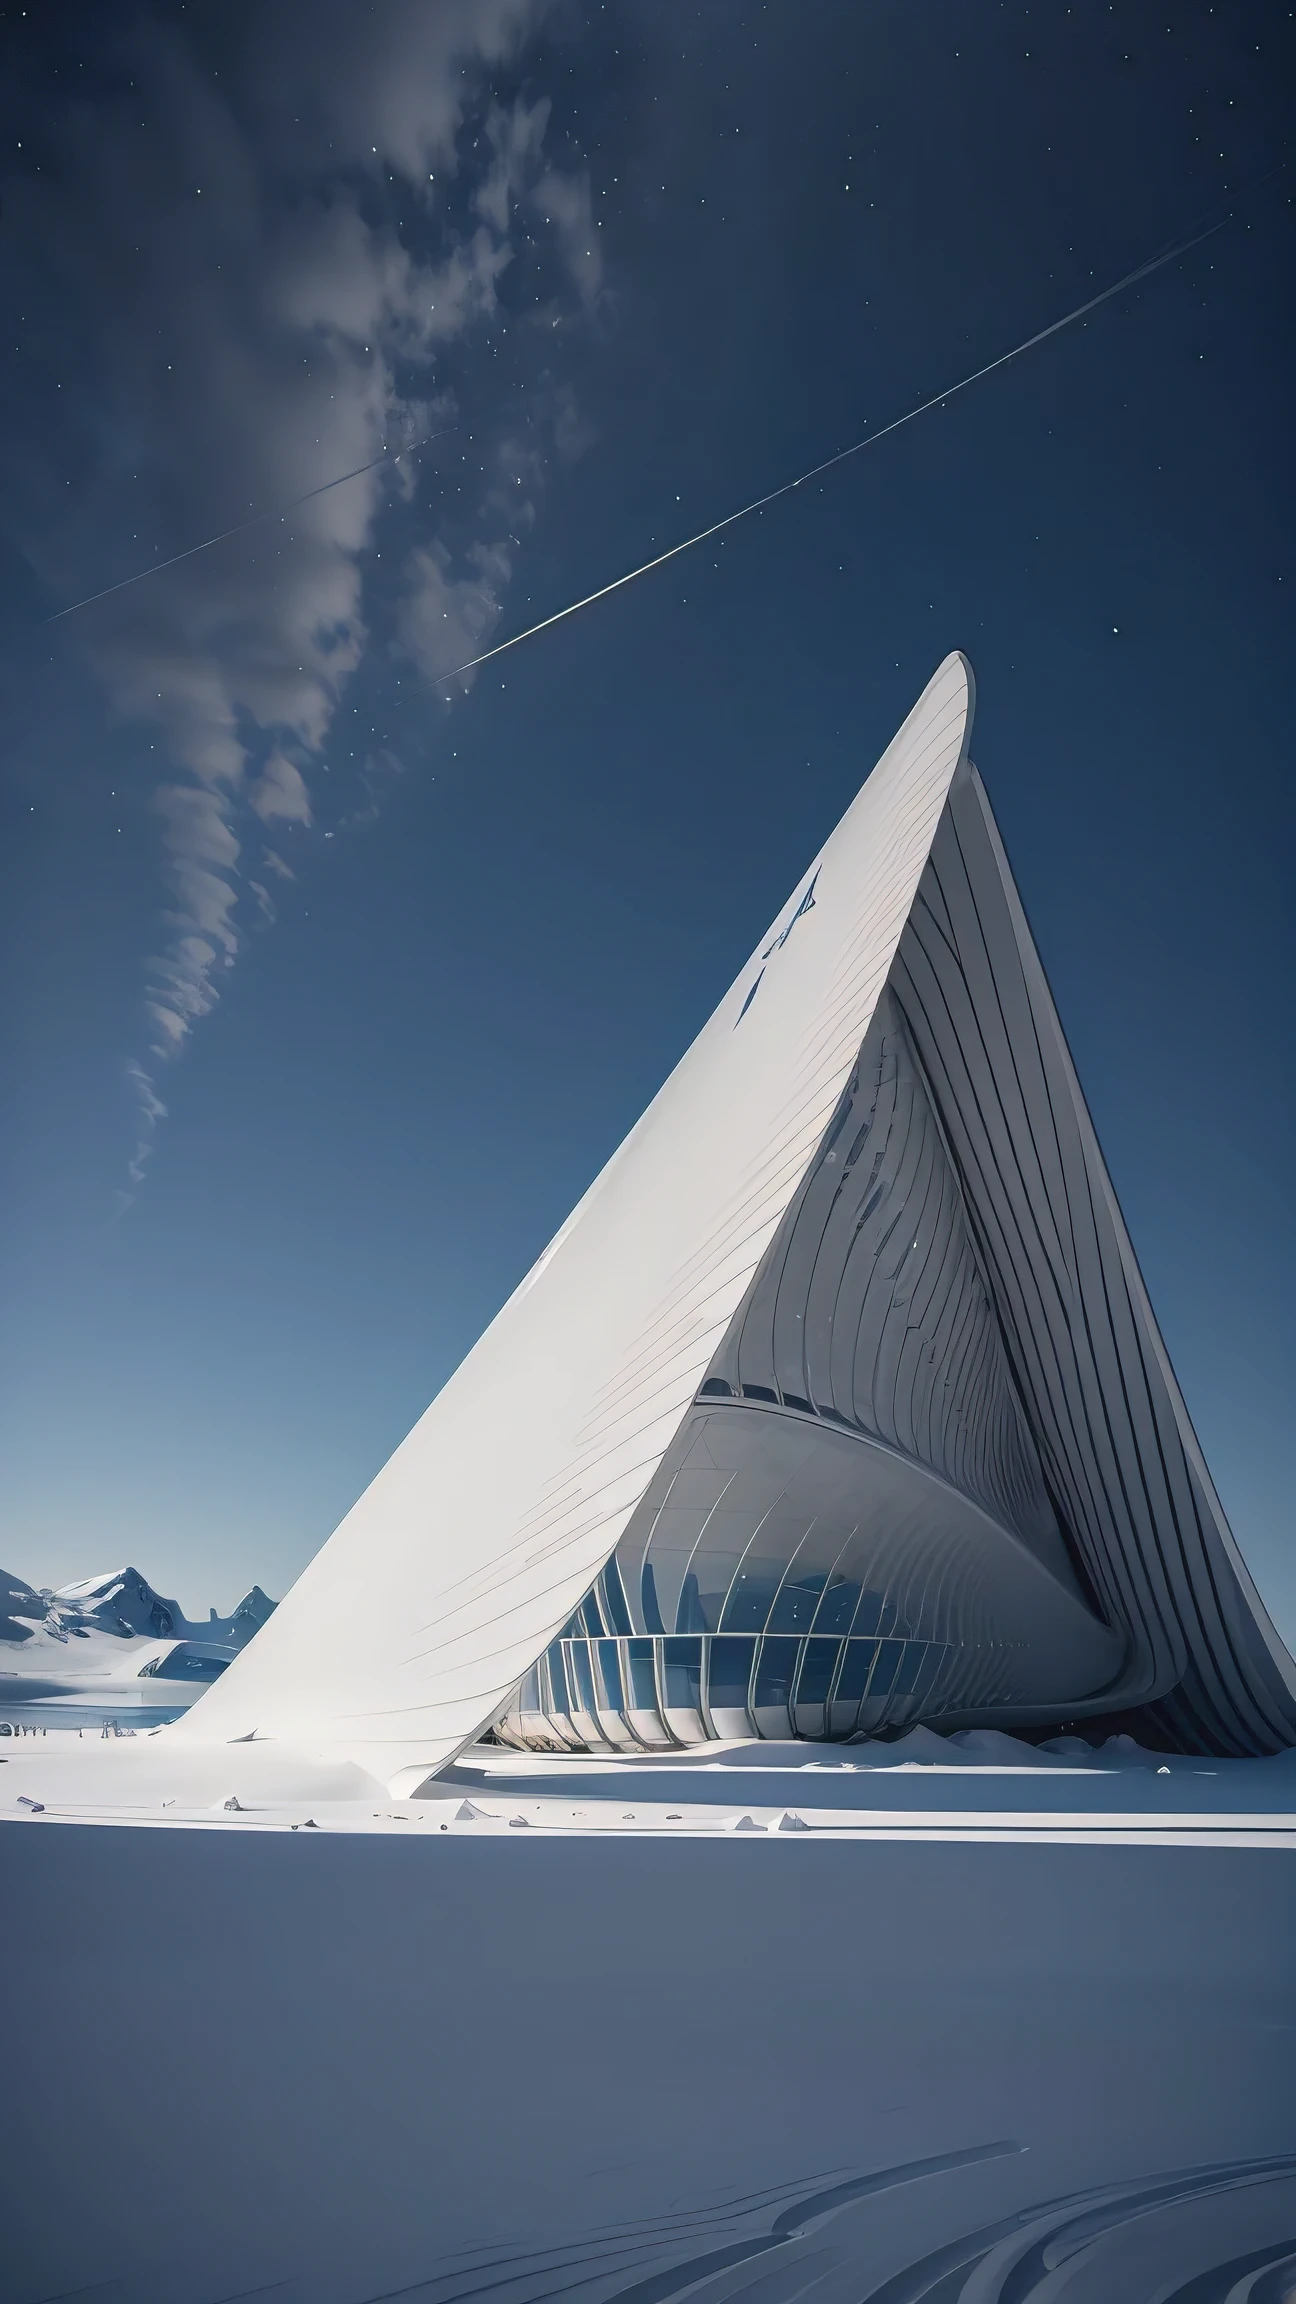 南極の雪氷河に建てられたザハ・ハディド風のパビリオン, 近代美術館. 説明には写真撮影の技術的な詳細も含まれる, シグマアート14mm f/2.8の使用など/1.8レンズ, ISO 3200の設定, 絞りf/1.8